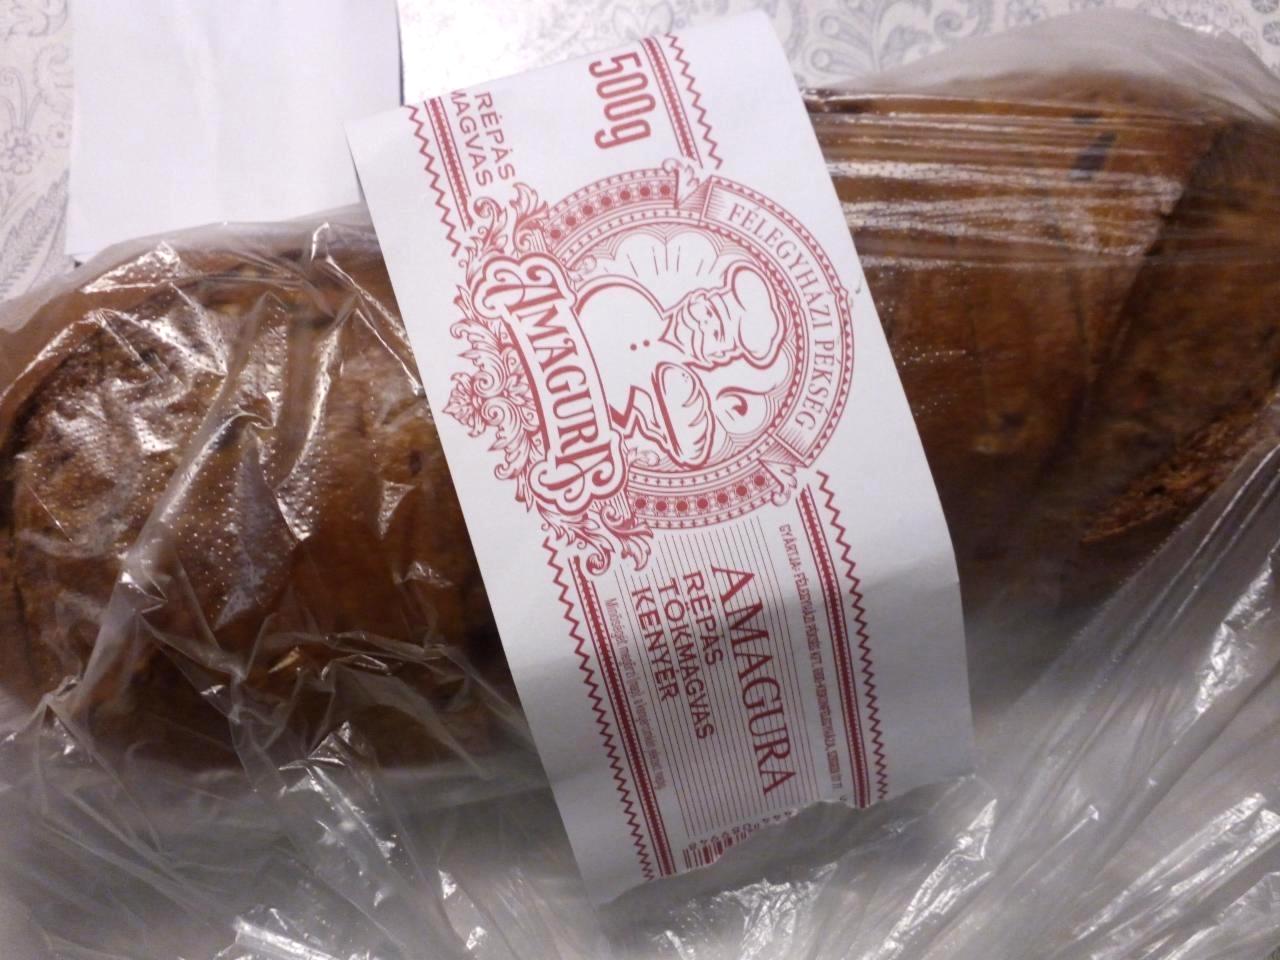 Képek - Amagura répás tökmagvas kenyér Félegyházi Pékség Kft.